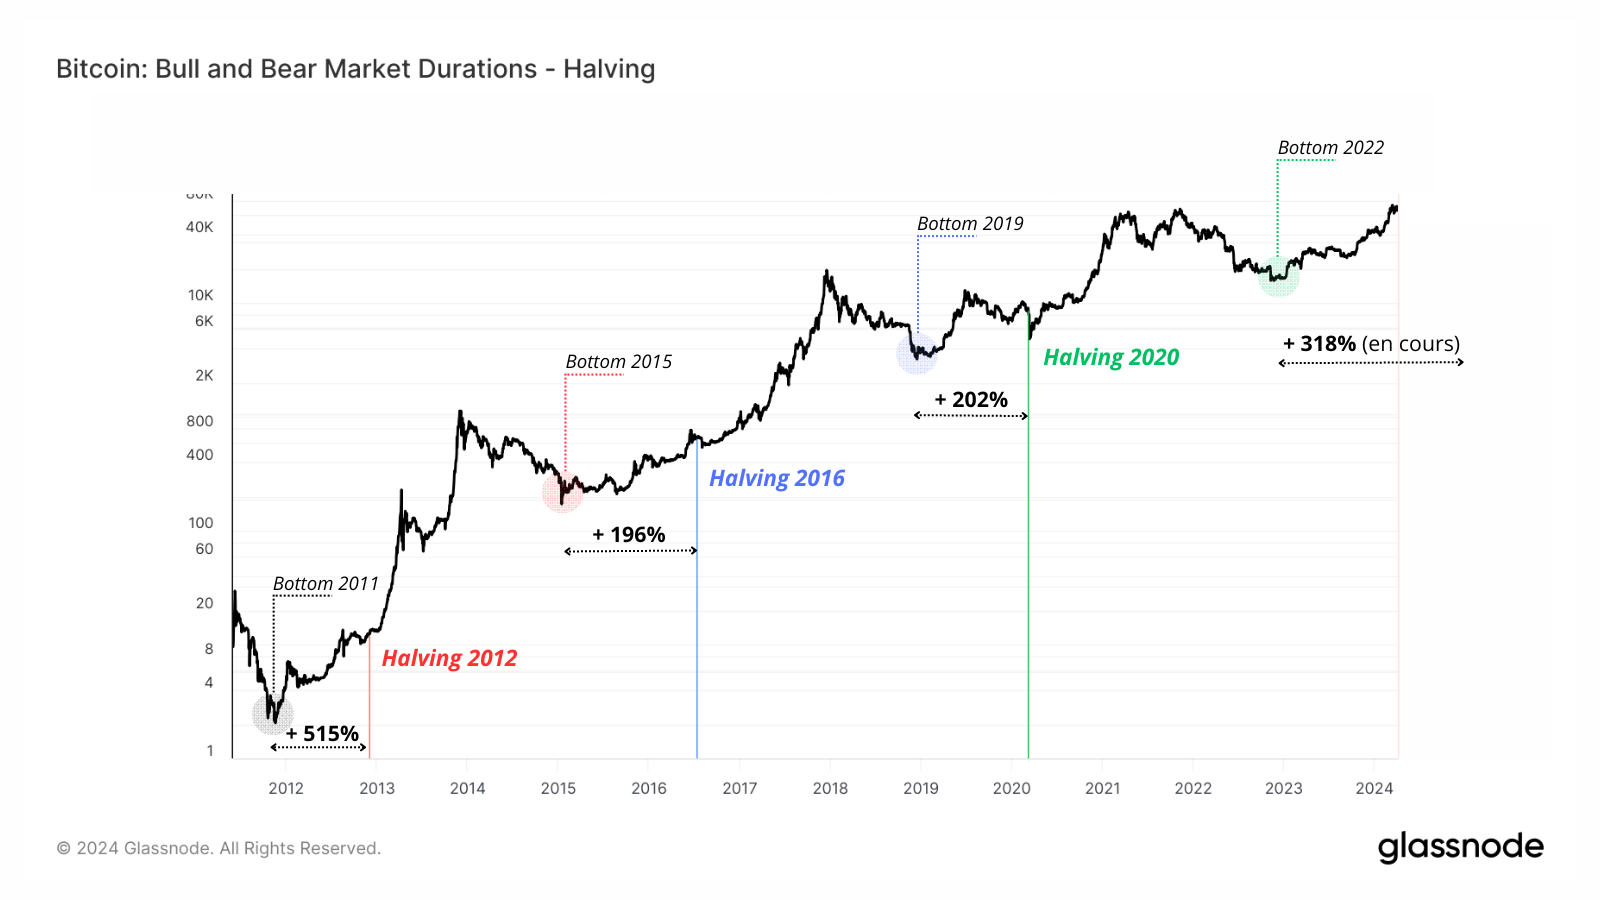 Cette image présente l'évolution du prix entre le bottom du cycle précédent et le halving.
On remarque que le prix du Bitcoin progresse d'environ +200% entre le bas de marché de 2015 jusqu'au halving de 2016, ainsi que pour le bas de marché de 2019 et le halving de 2020. Sur ce cycle on observe une grande évolution du prix, de plus de 318% entre le bas de marché de 2022 à aujourd'hui.